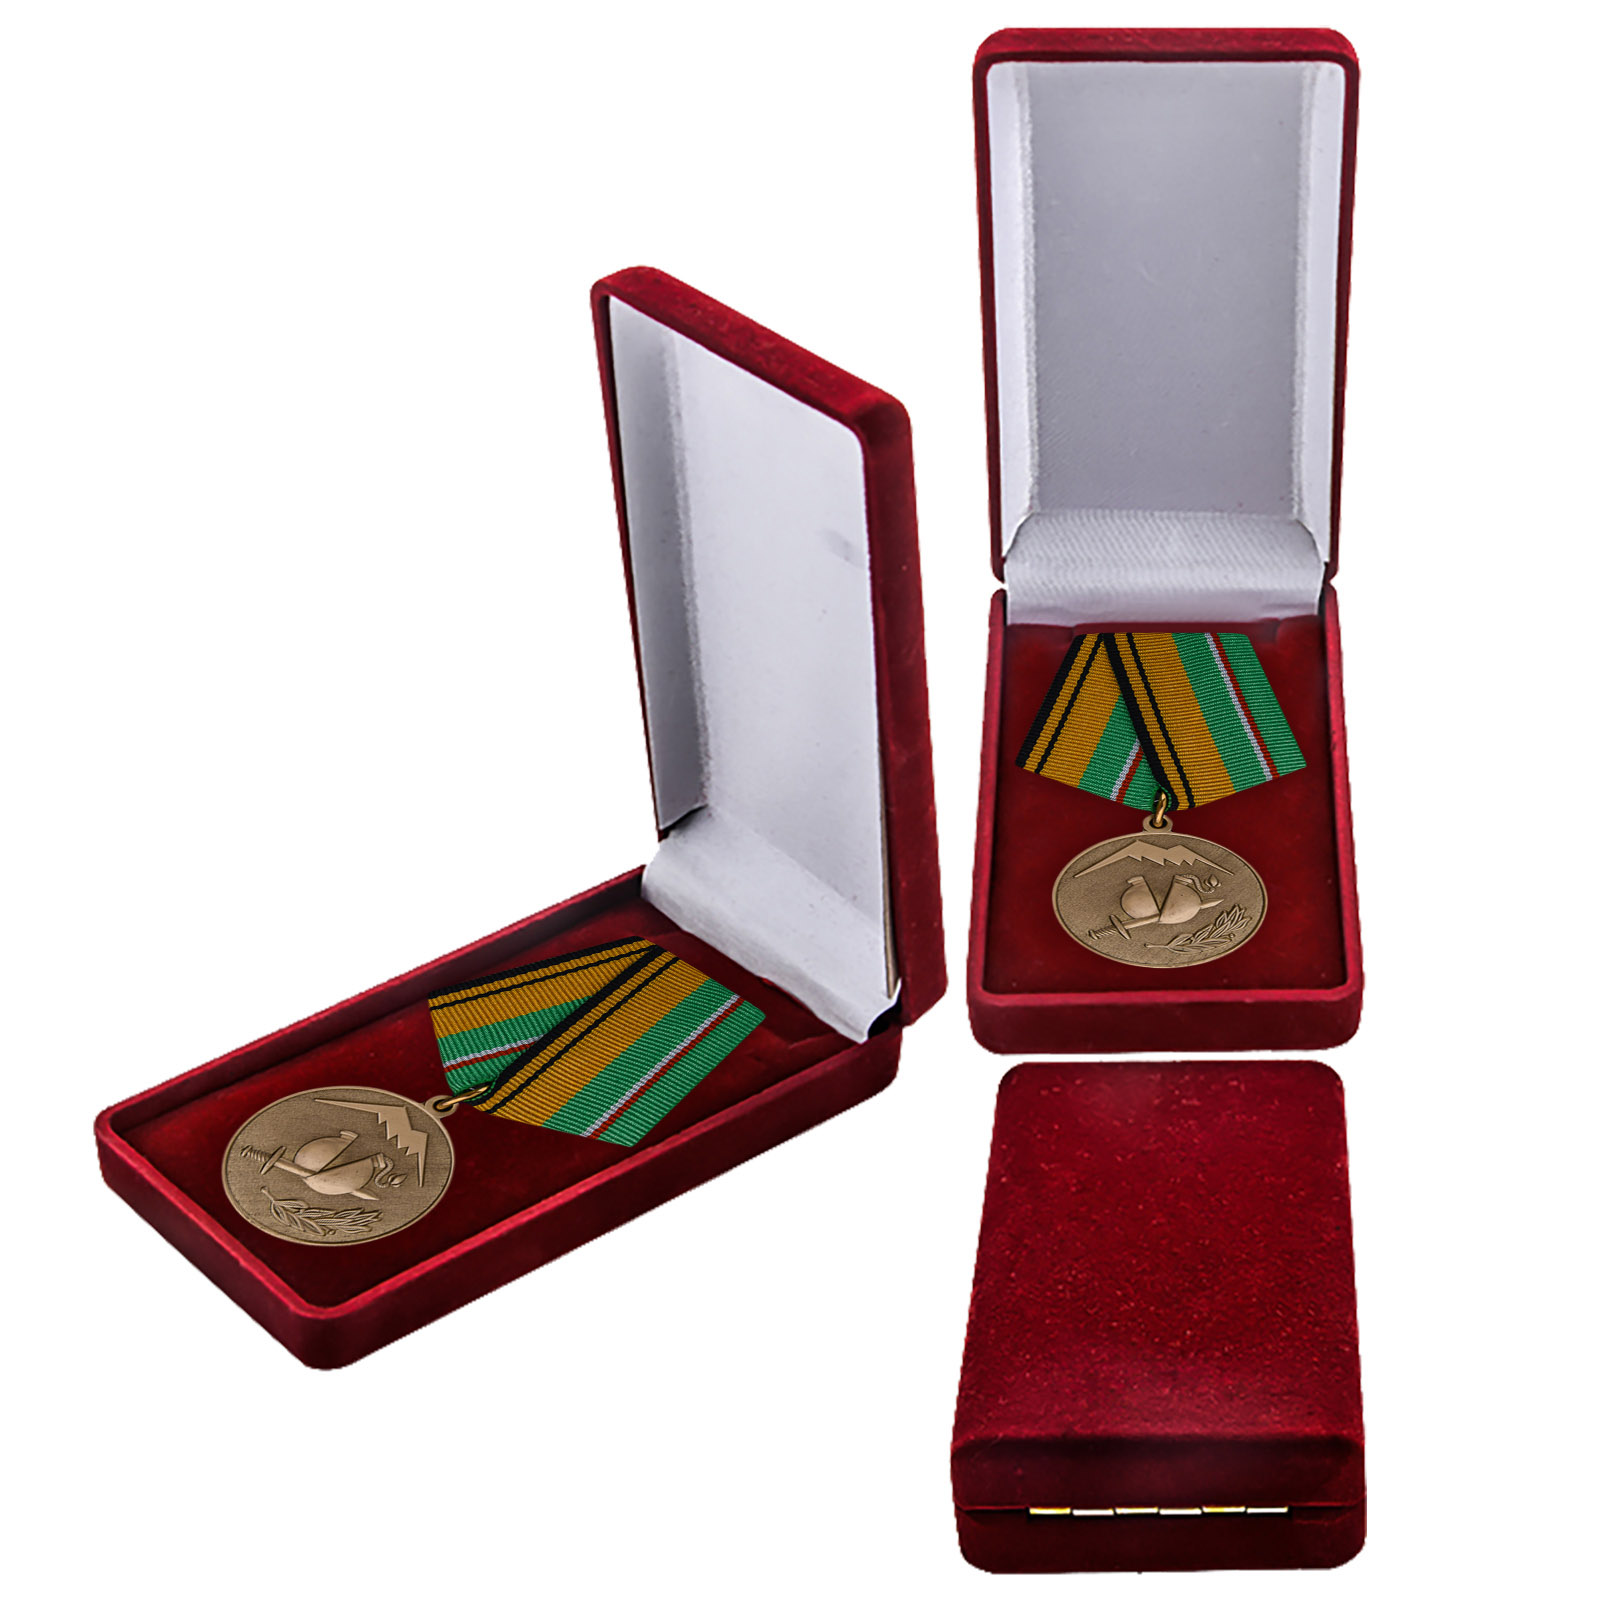 Купить медаль Участнику разминирования в Чеченской Республике и Республике Ингушетия МО России онлайн